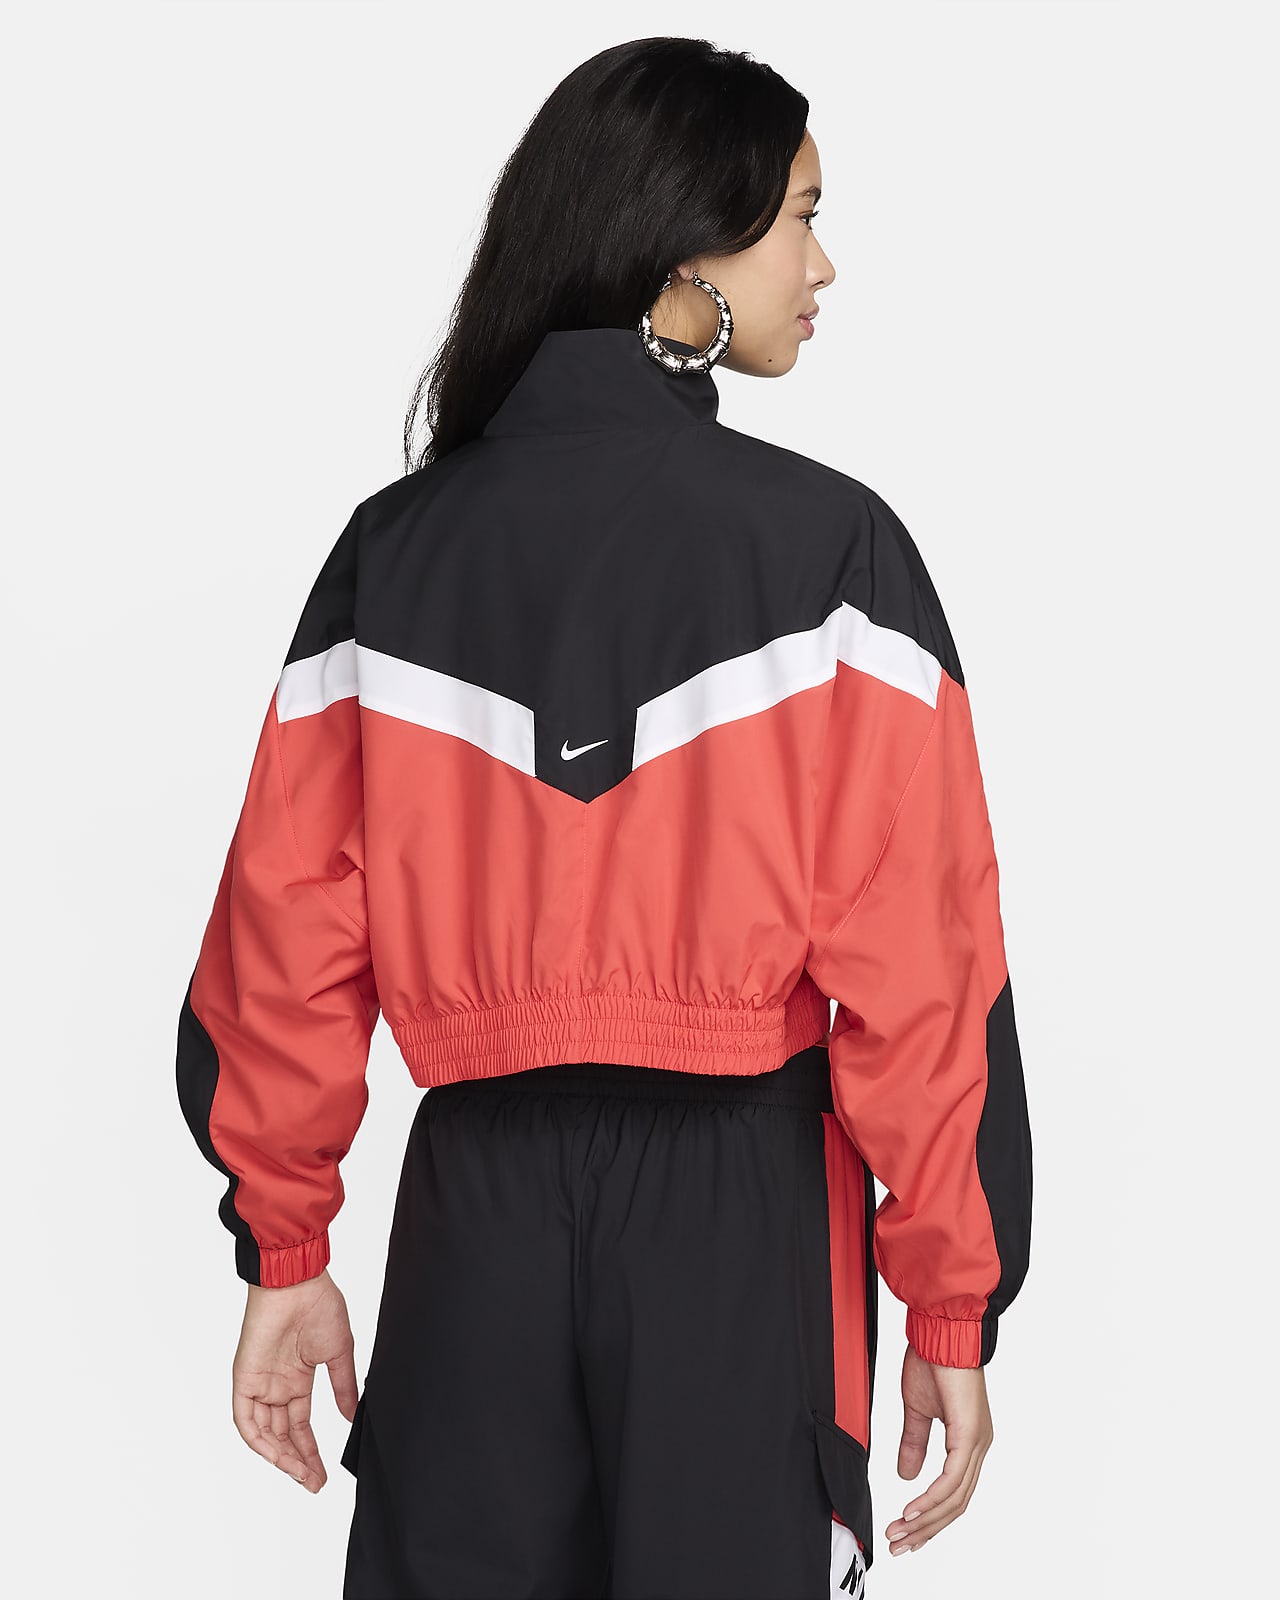 Nike Sportswear Women's Woven Jacket